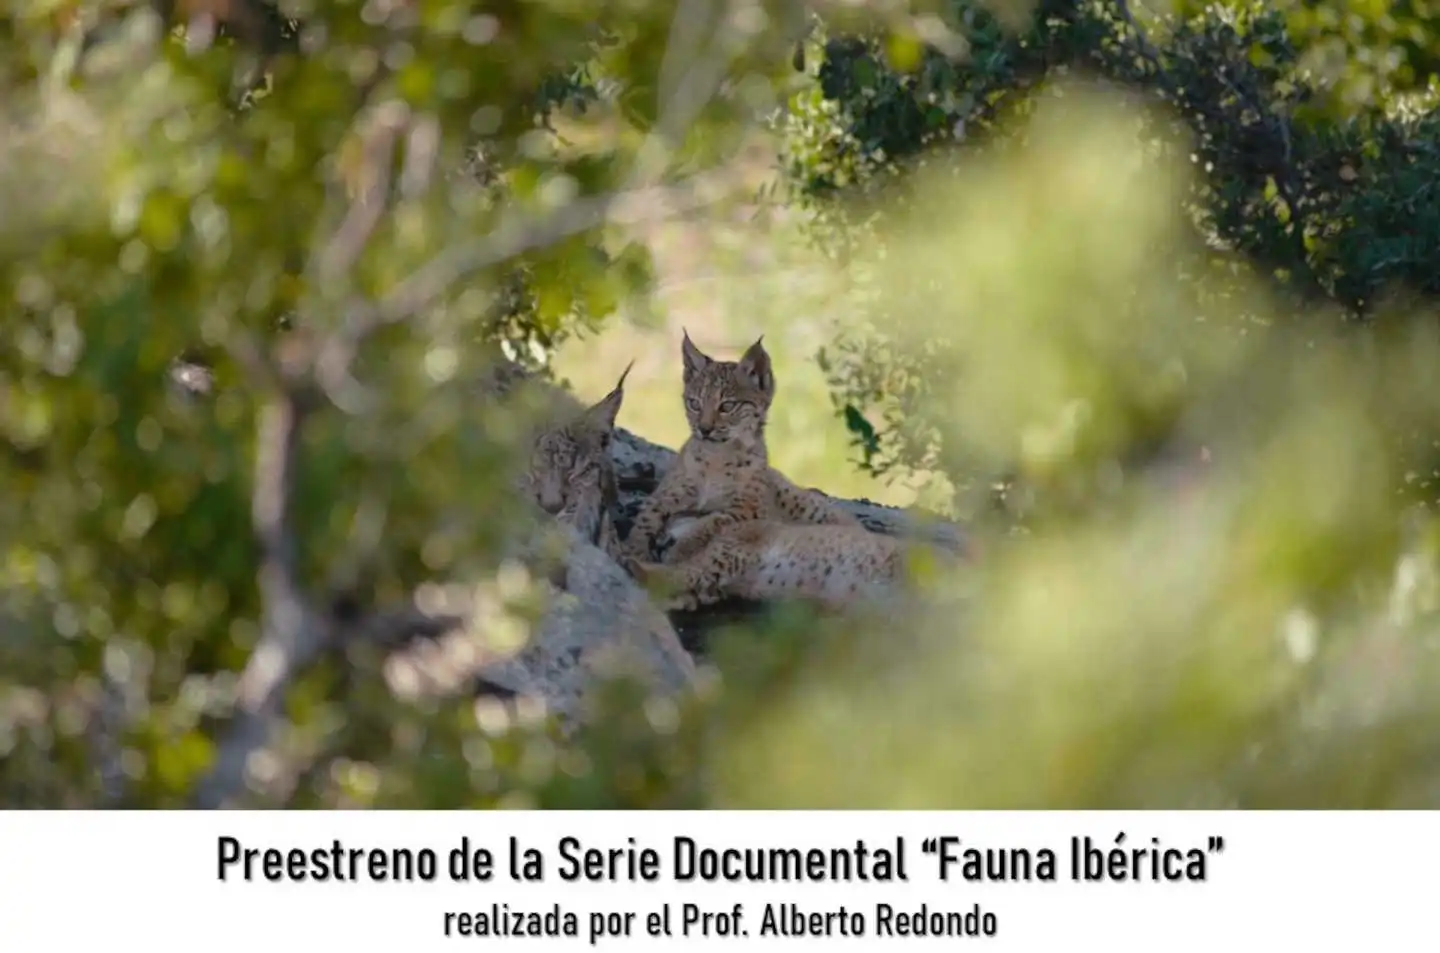 Preestreno Documental "Fauna Ibérica" en Somiedo